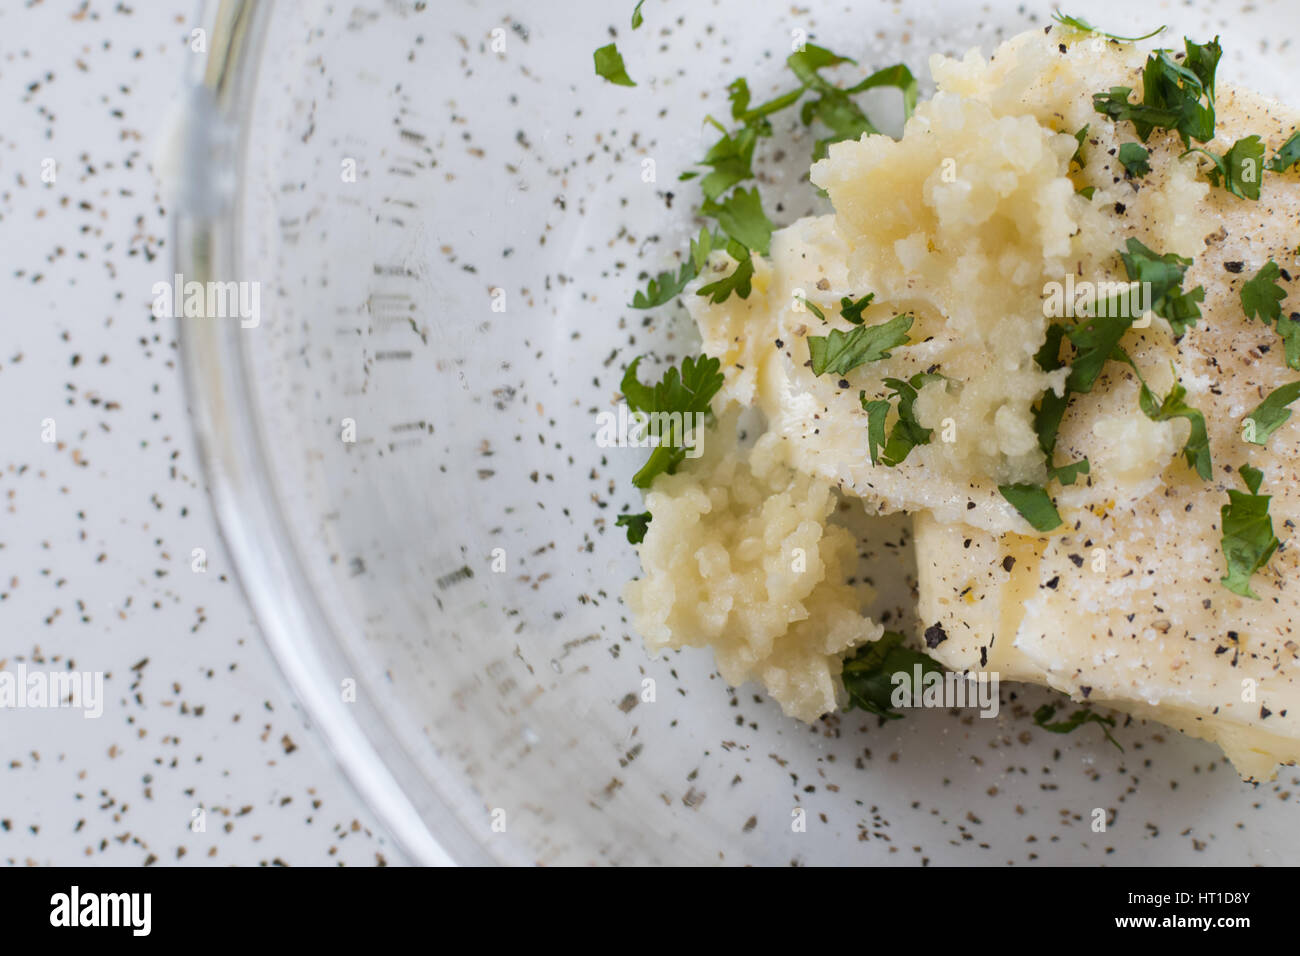 Burro all'aglio nel contenitore in vetro Foto Stock